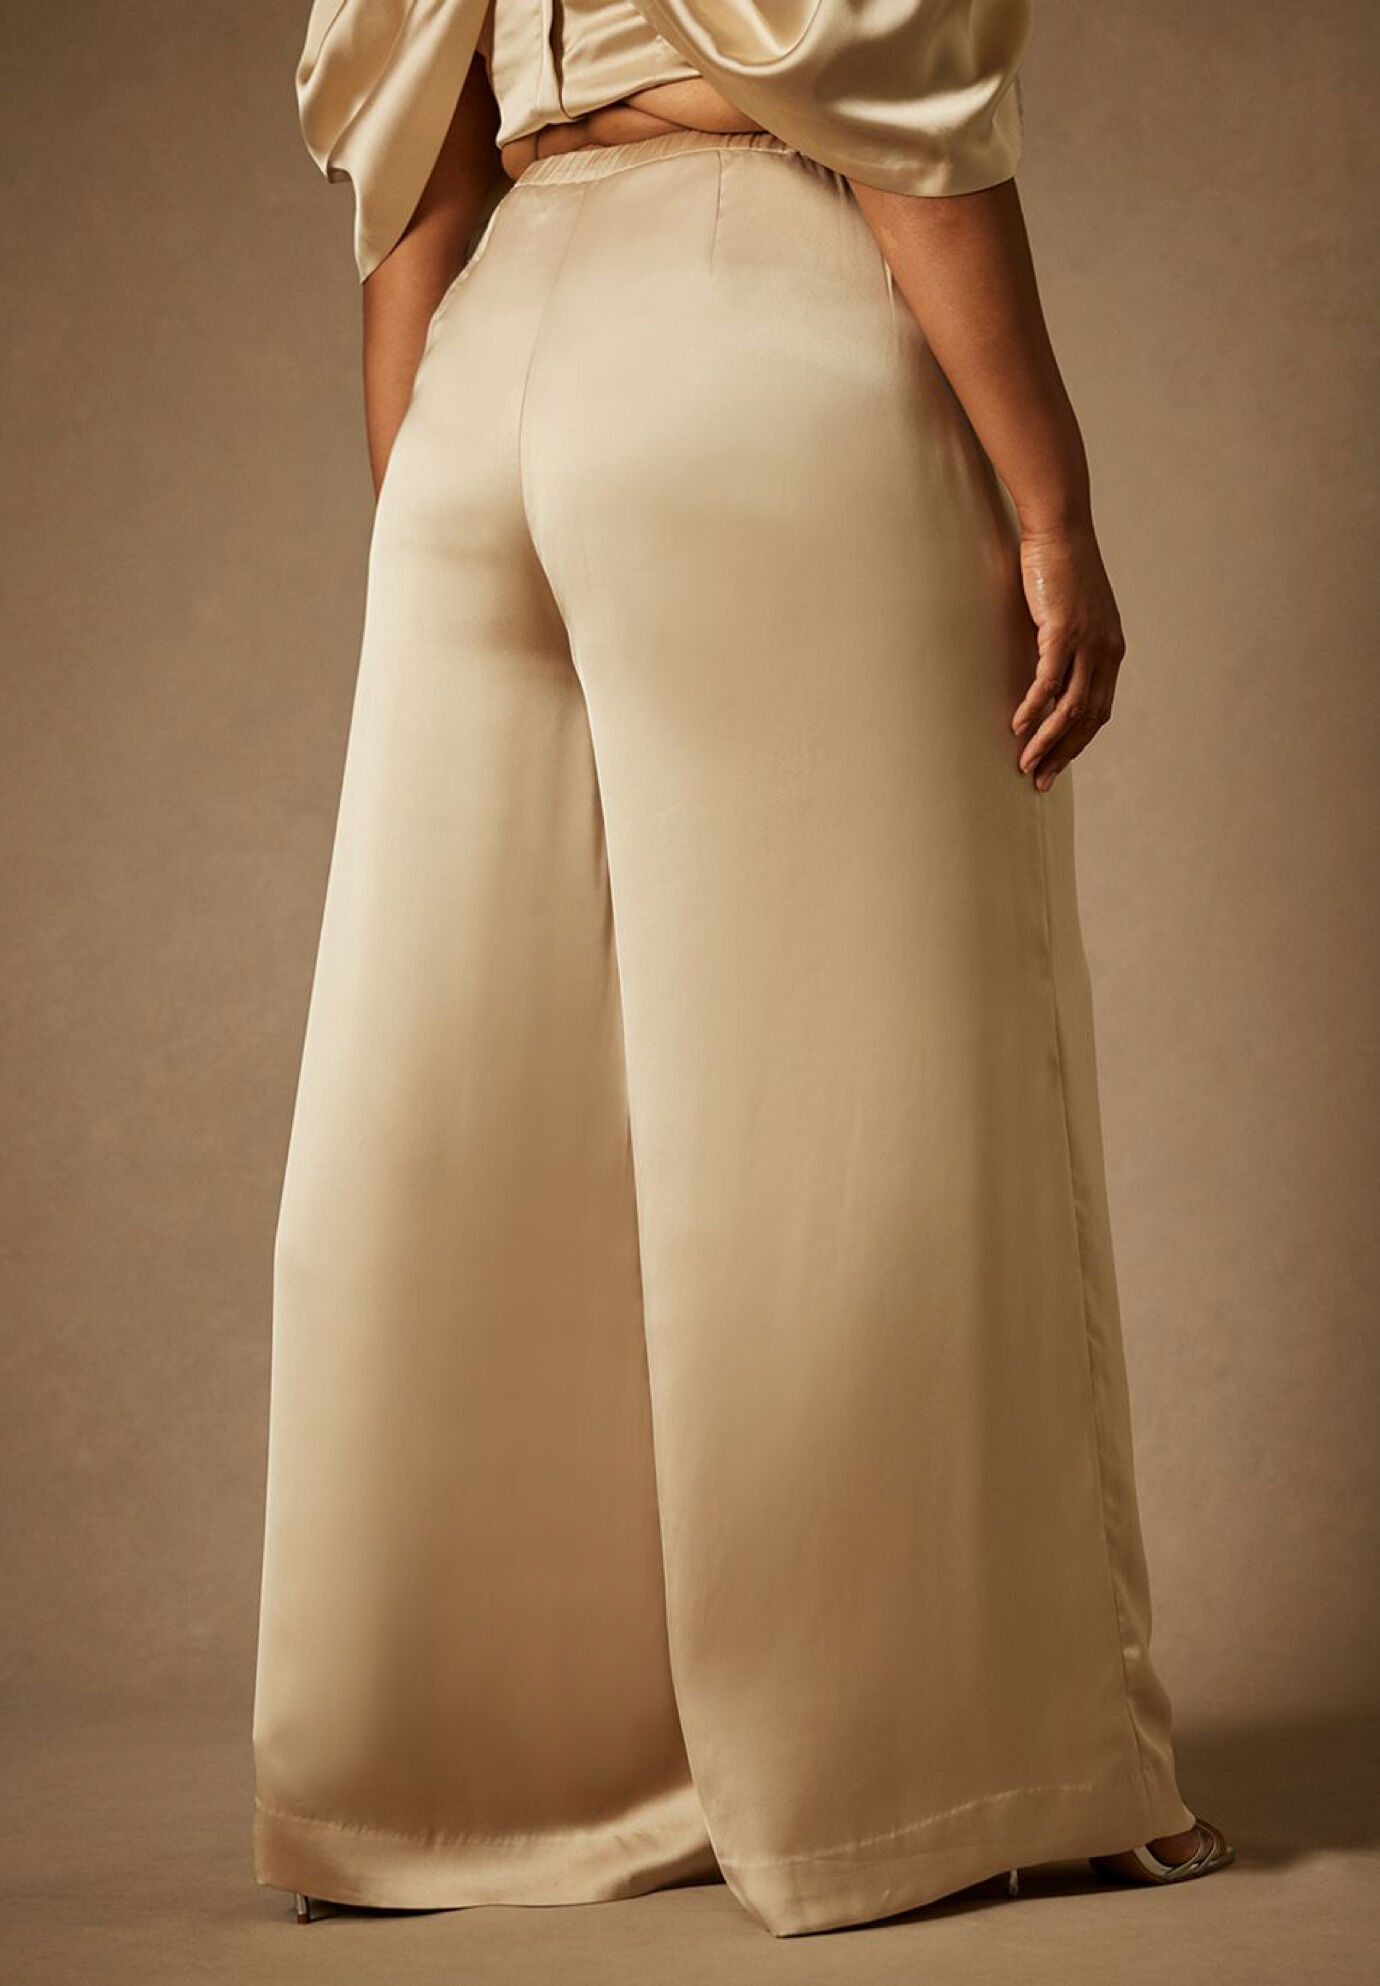 Buy Forever New Cream Pants for Women's Online @ Tata CLiQ